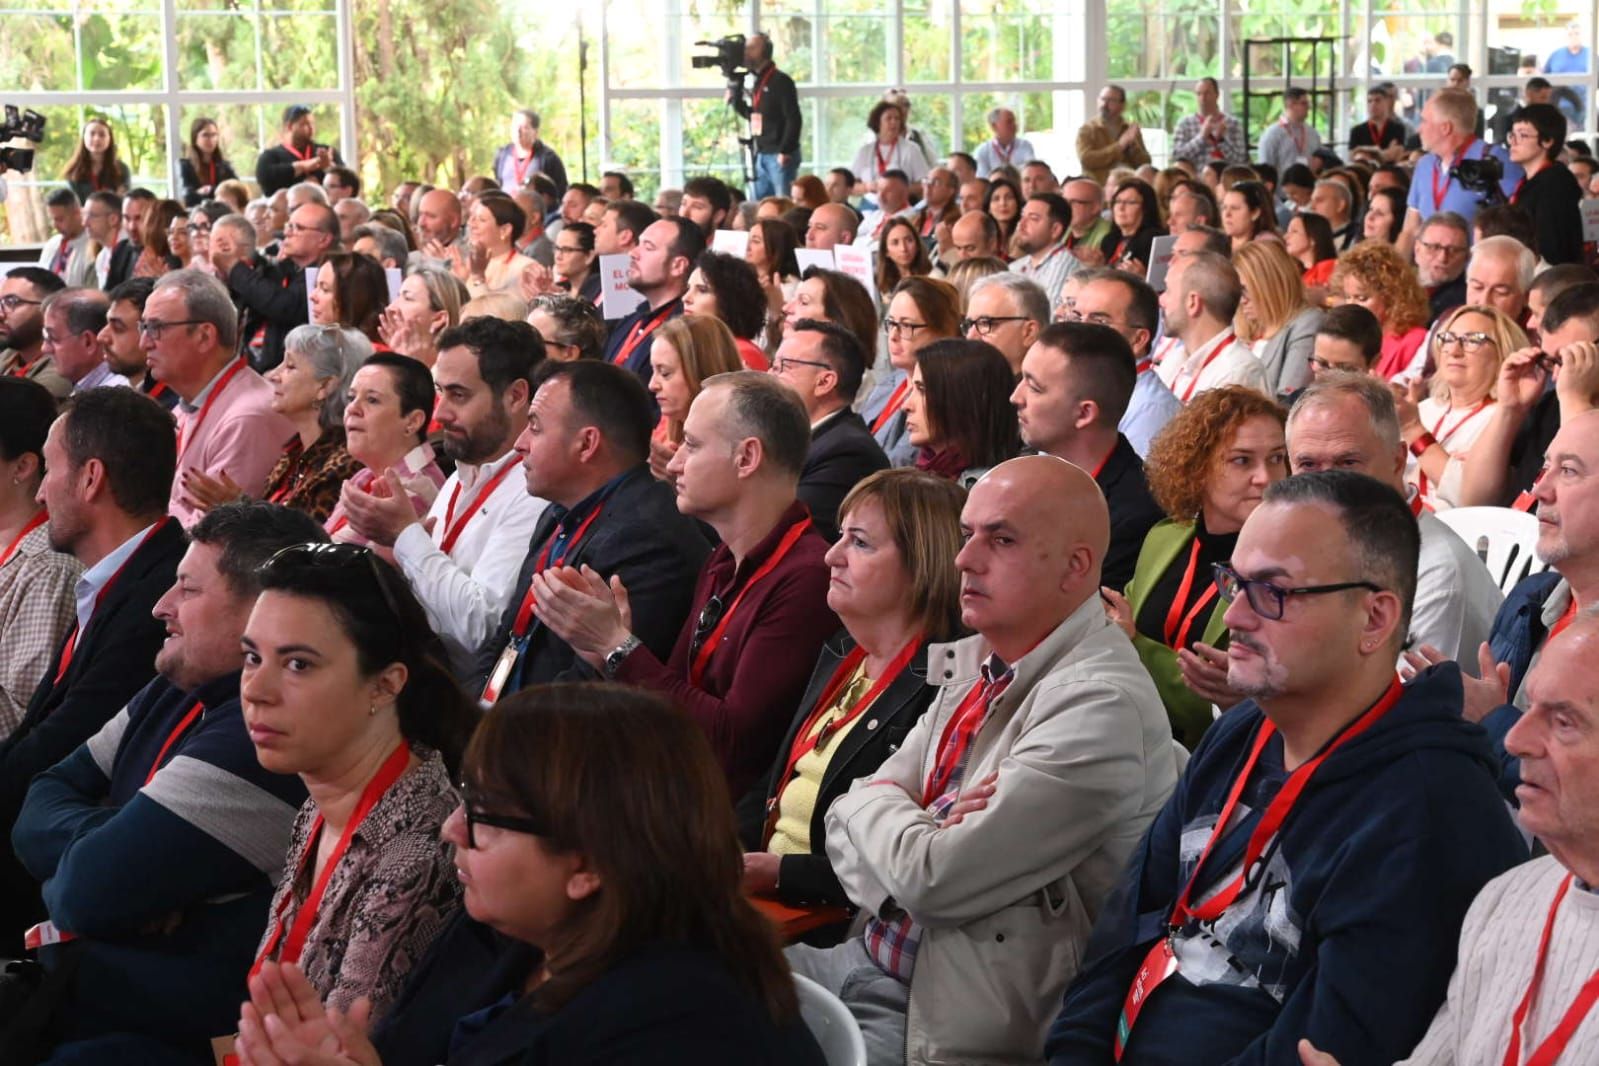 La tercera jornada del congreso del PSPV en Benicàssim, en imágenes